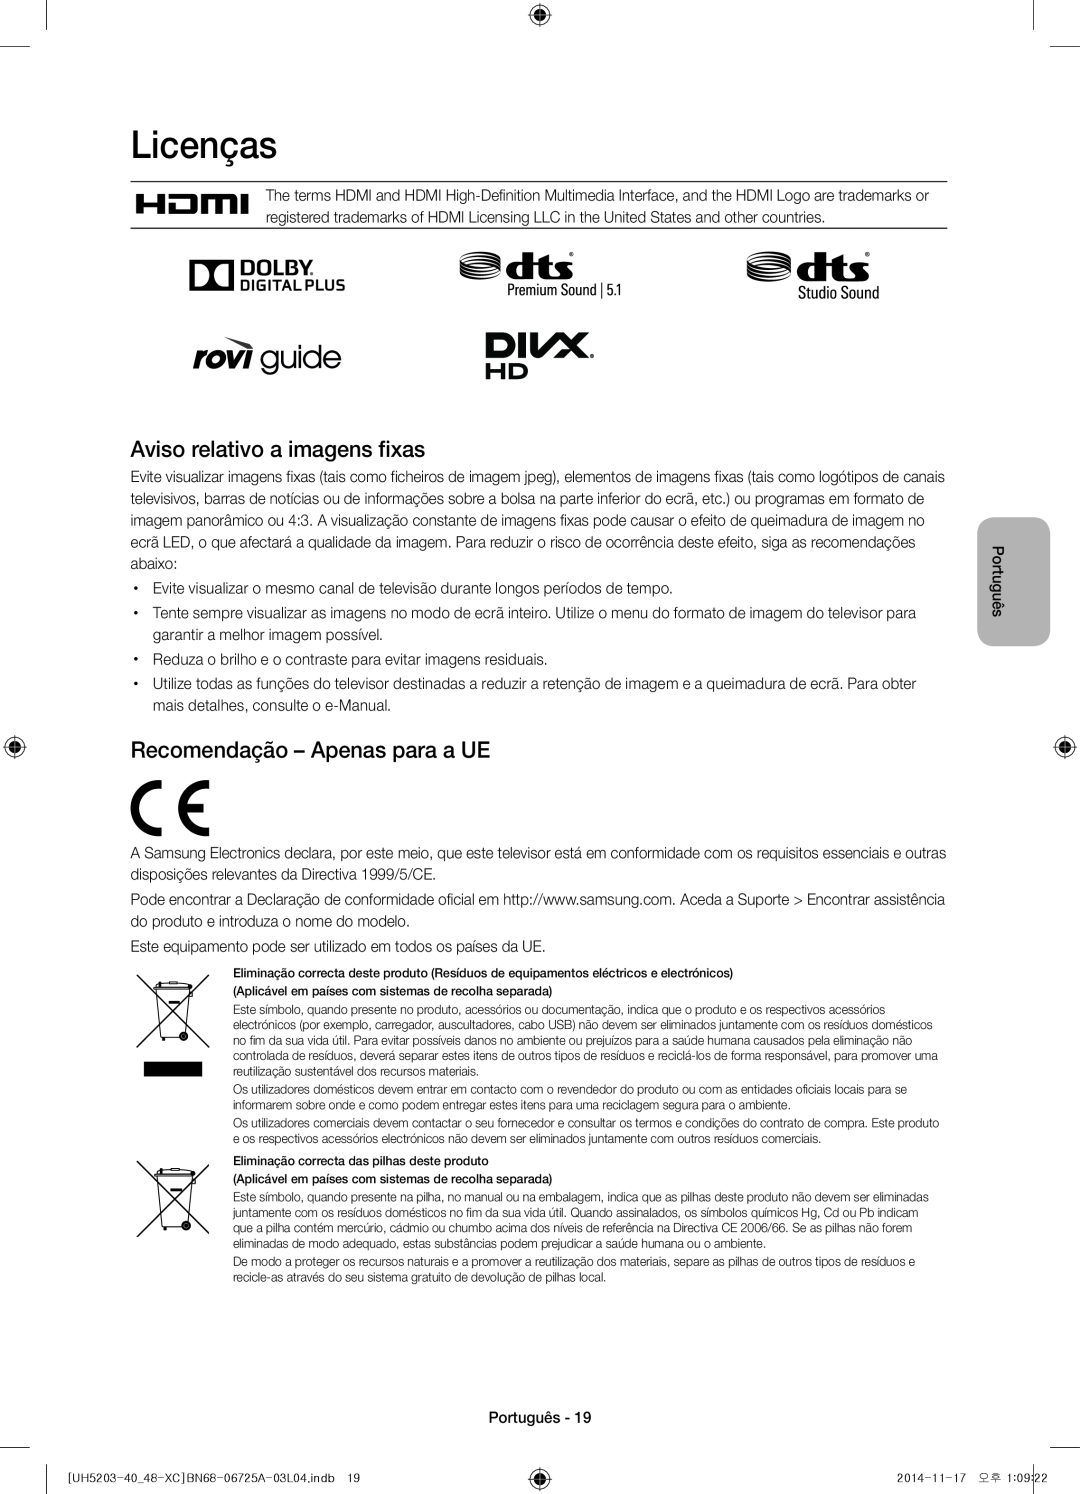 Samsung UE48H5203AWXXC manual Licenças, Aviso relativo a imagens fixas, Recomendação - Apenas para a UE, Português 